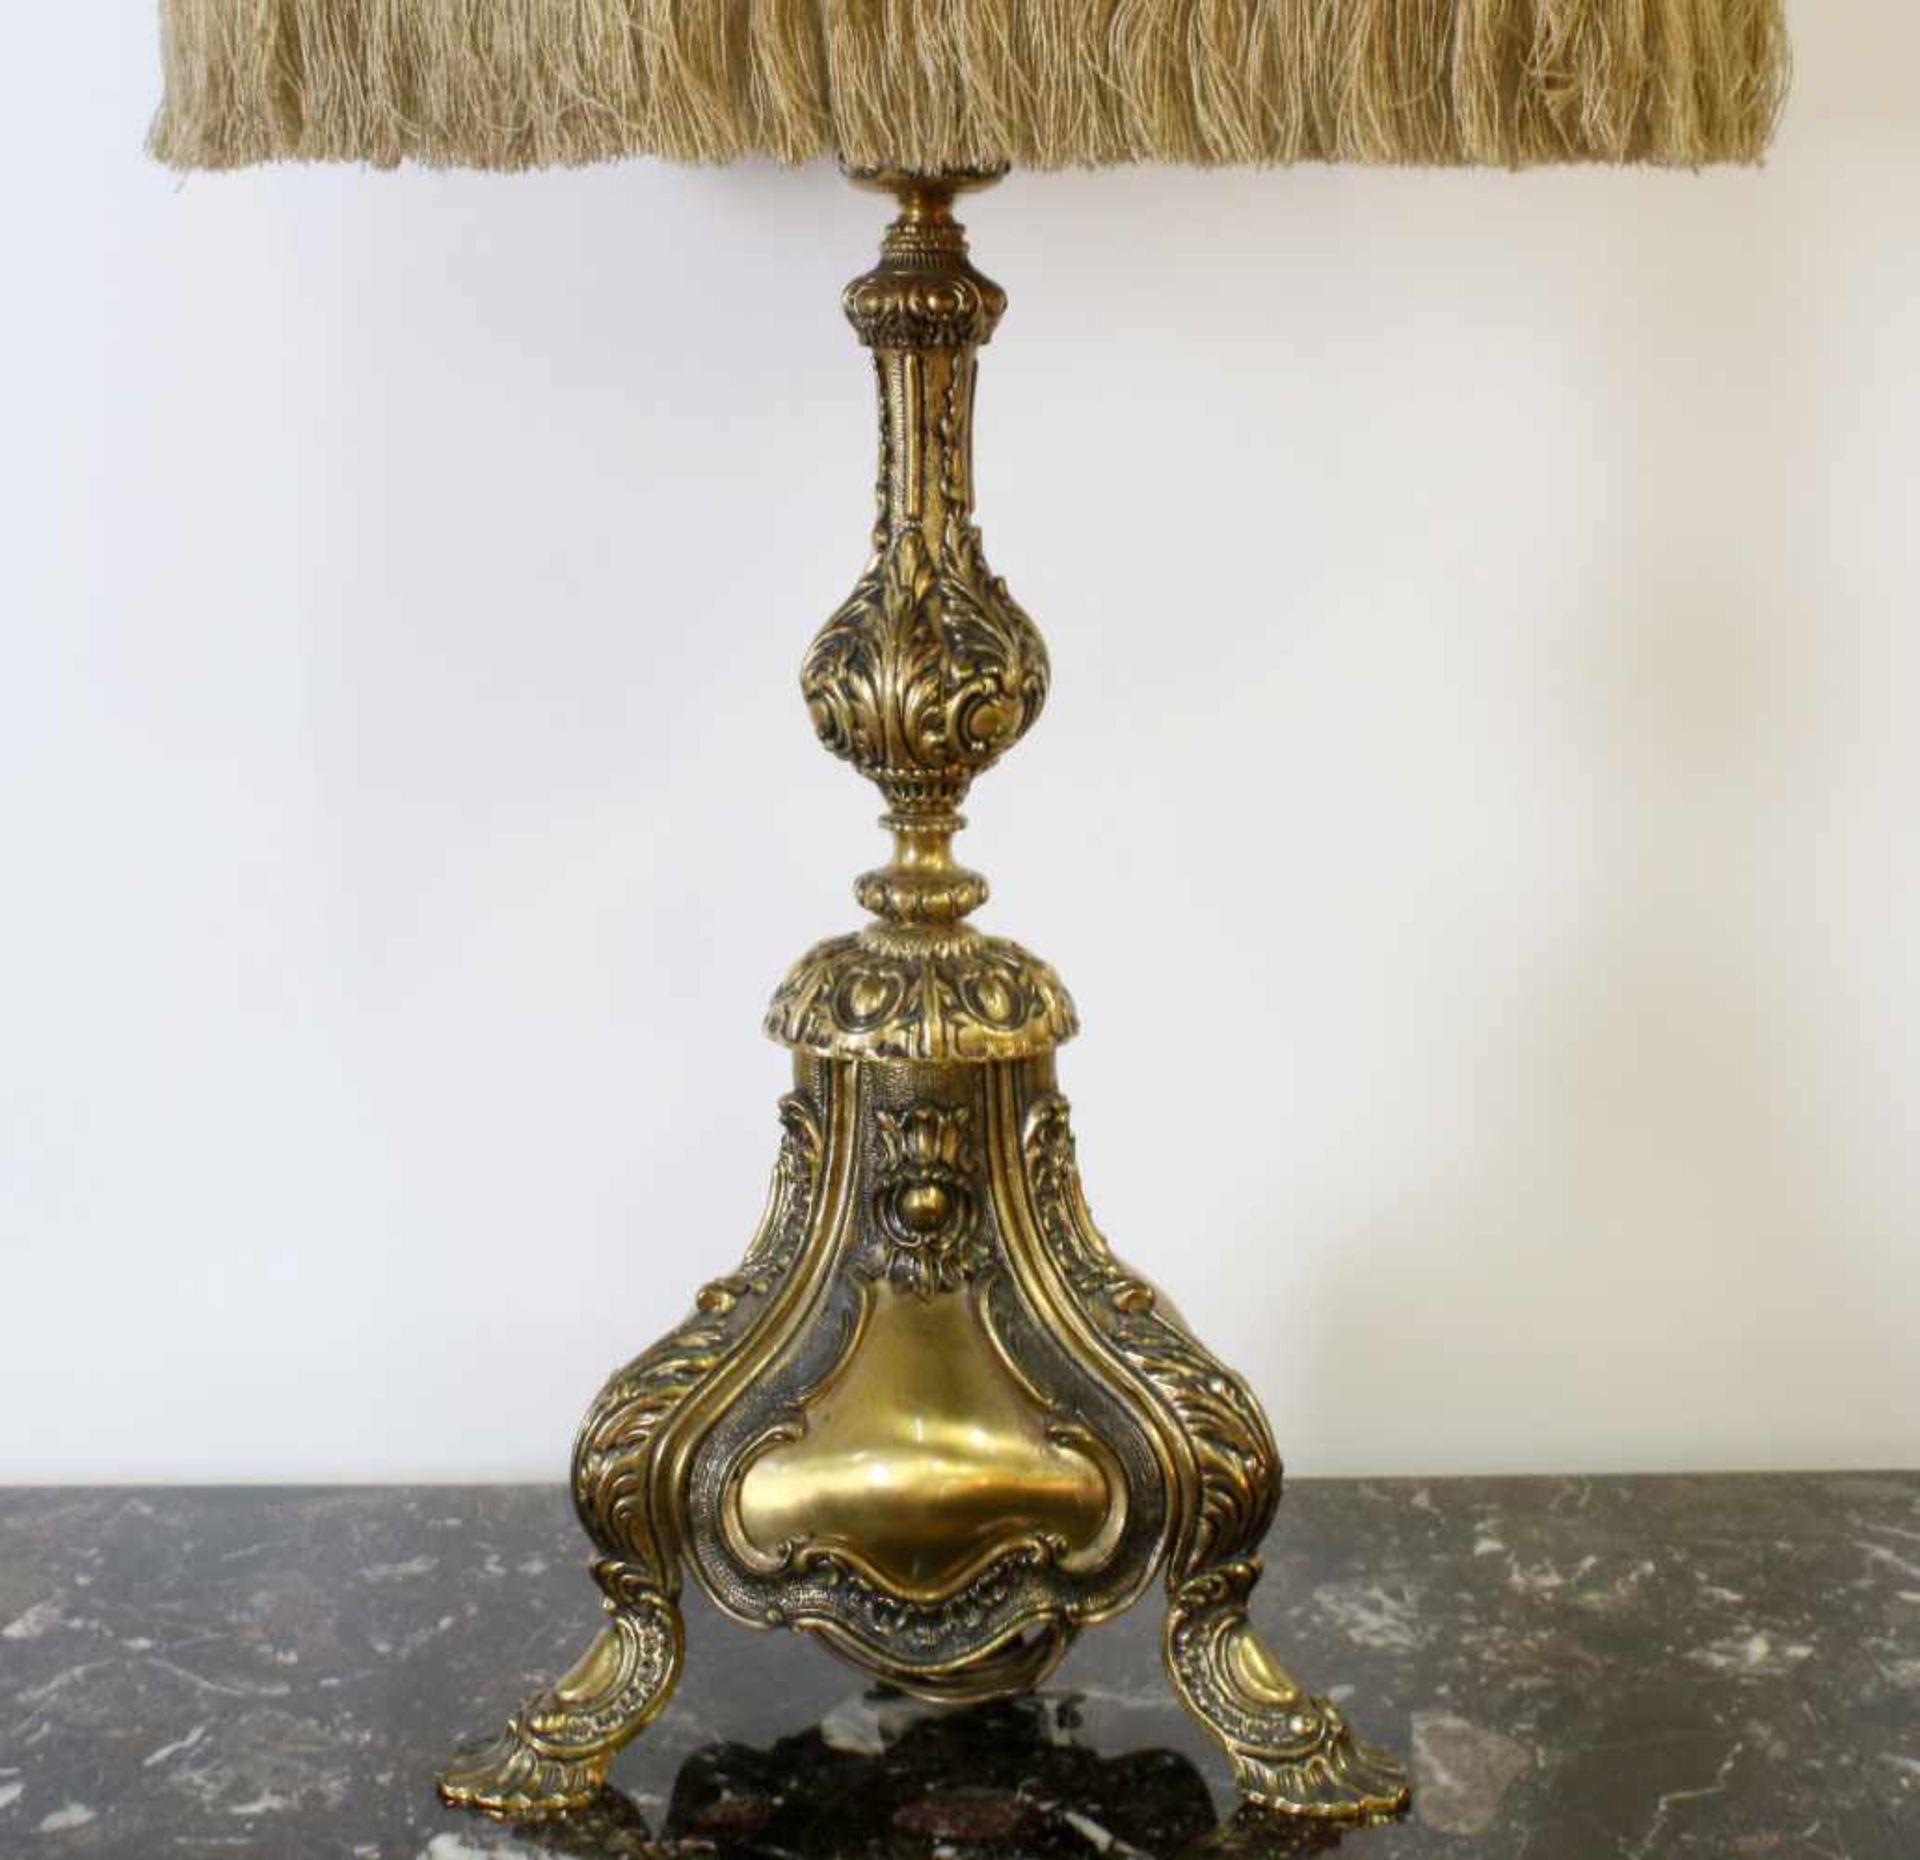 Barocke Messinglampe Eindrucksvolle Lampe im barocken Stil mit reich besticktem, ausladenden - Bild 3 aus 5